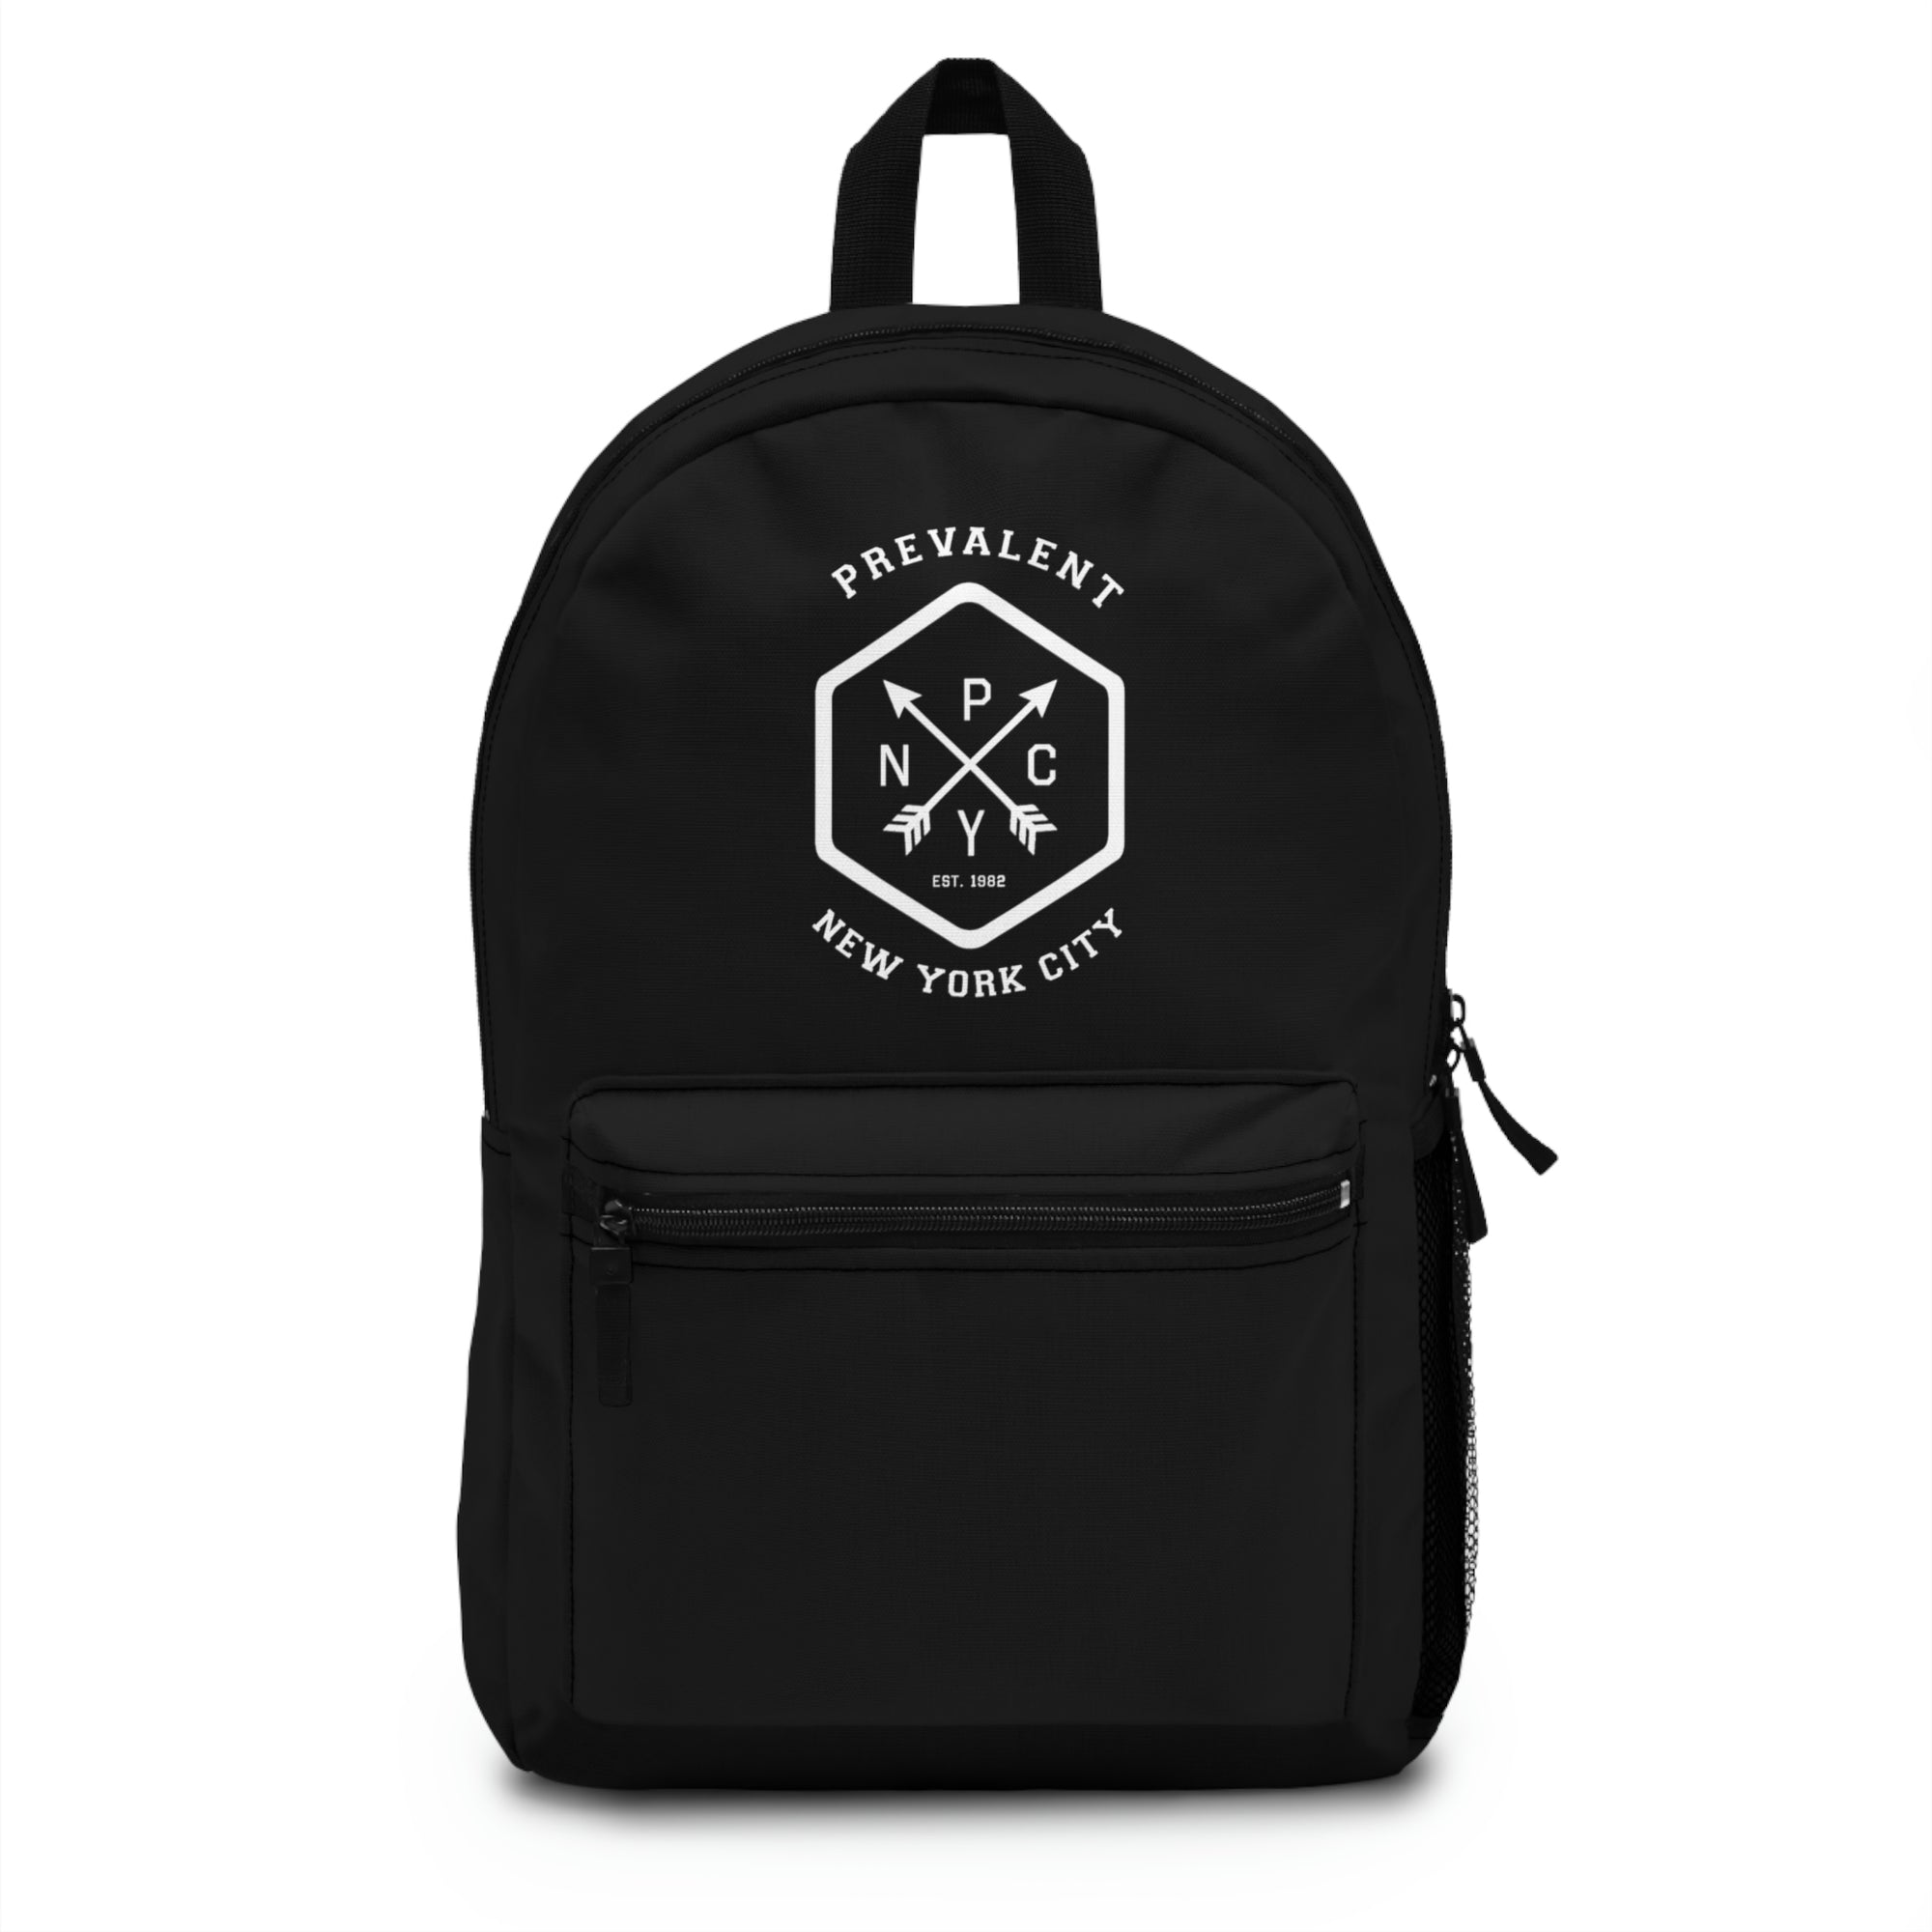 PrevalentENY White/Black Backpack